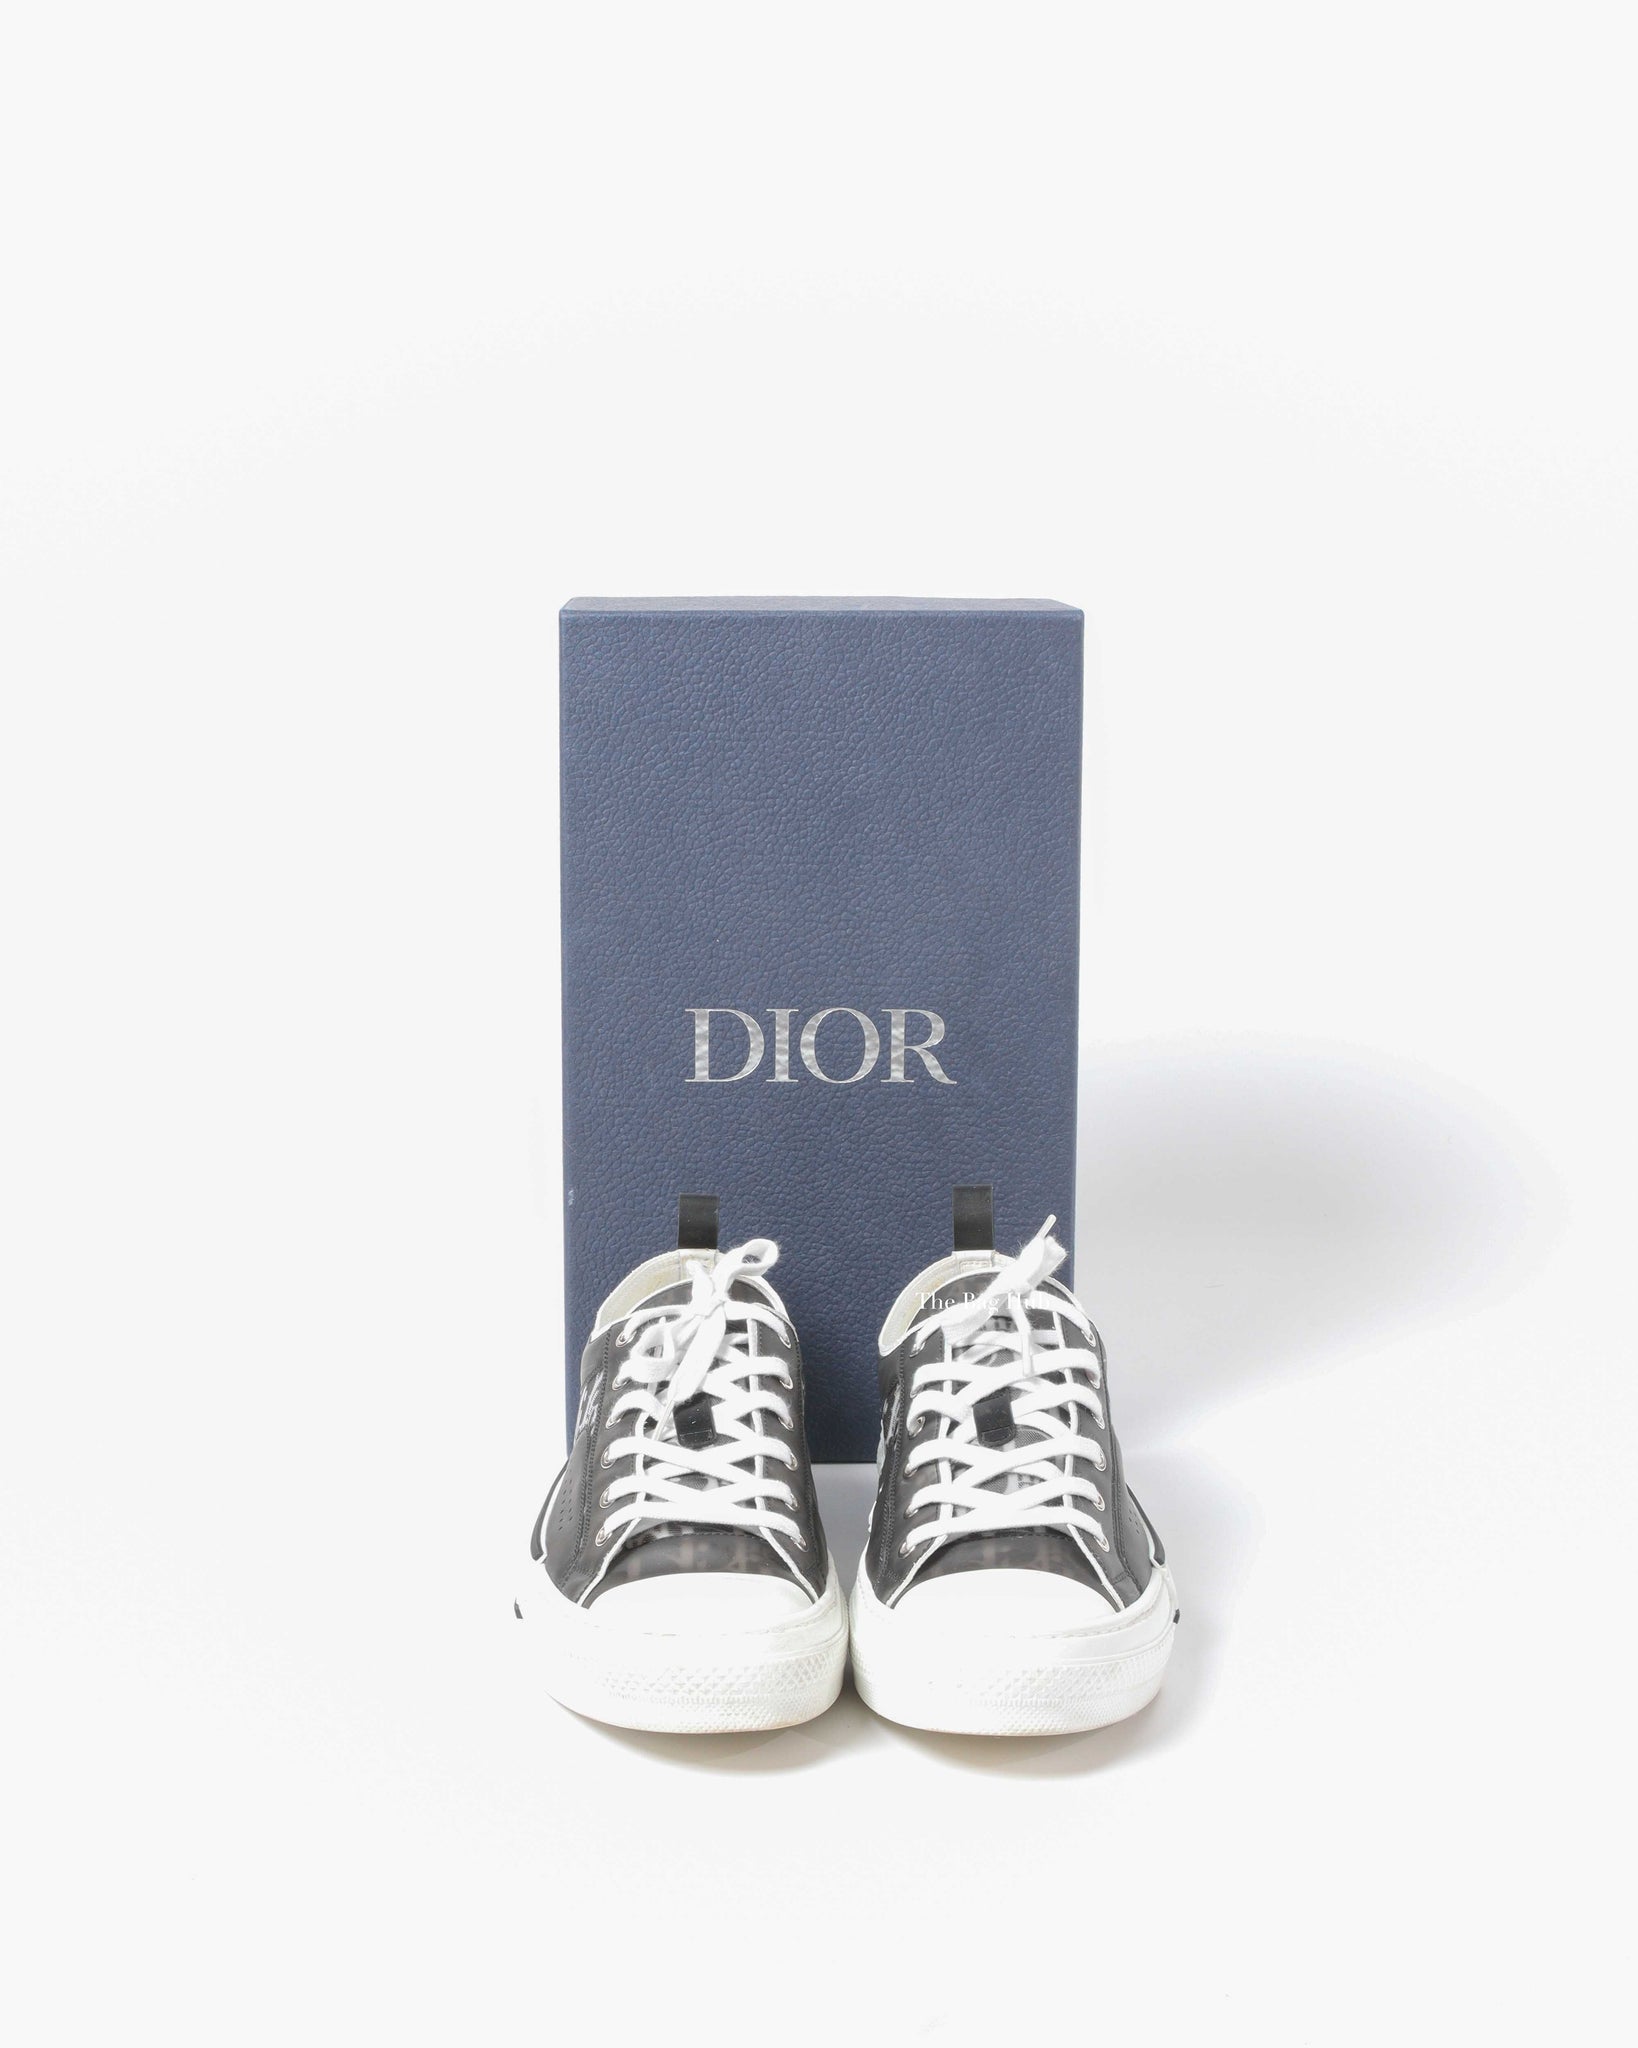 Dior Black/White Oblique Canvas Transparent B23 Low Top Sneakers Size 44-9